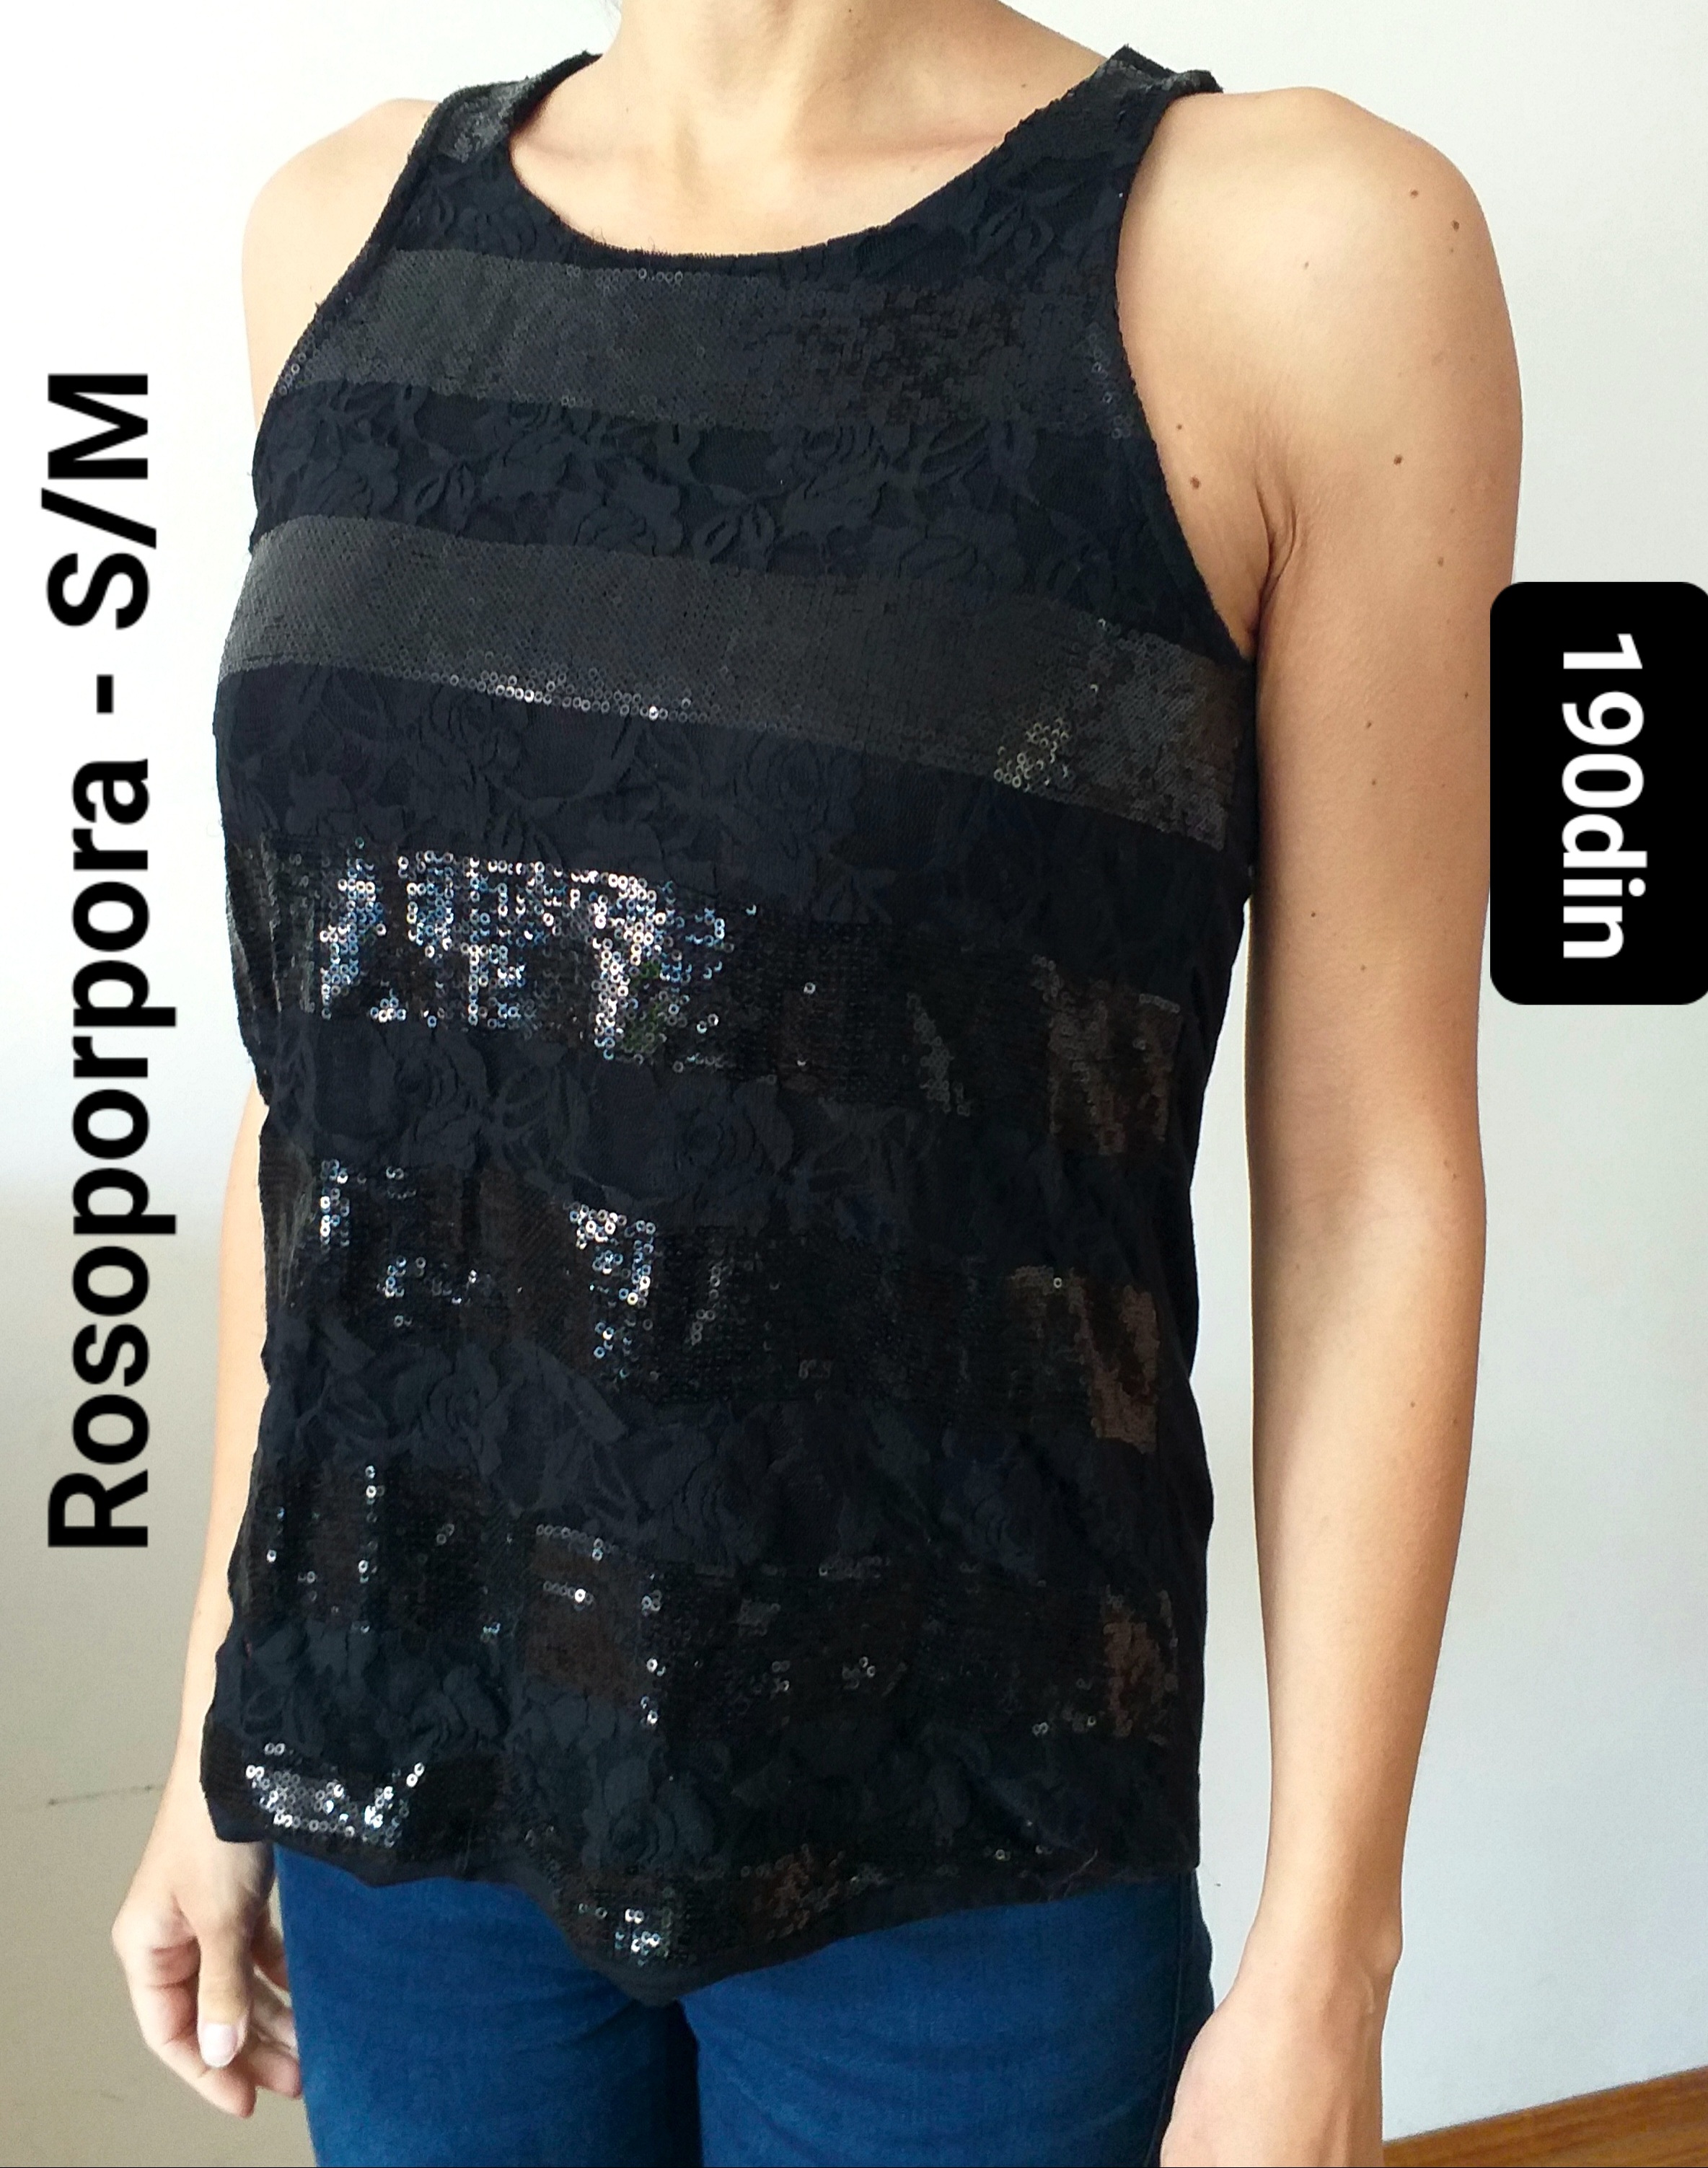 Rosoporpora ženska majica elegantna crna S/36